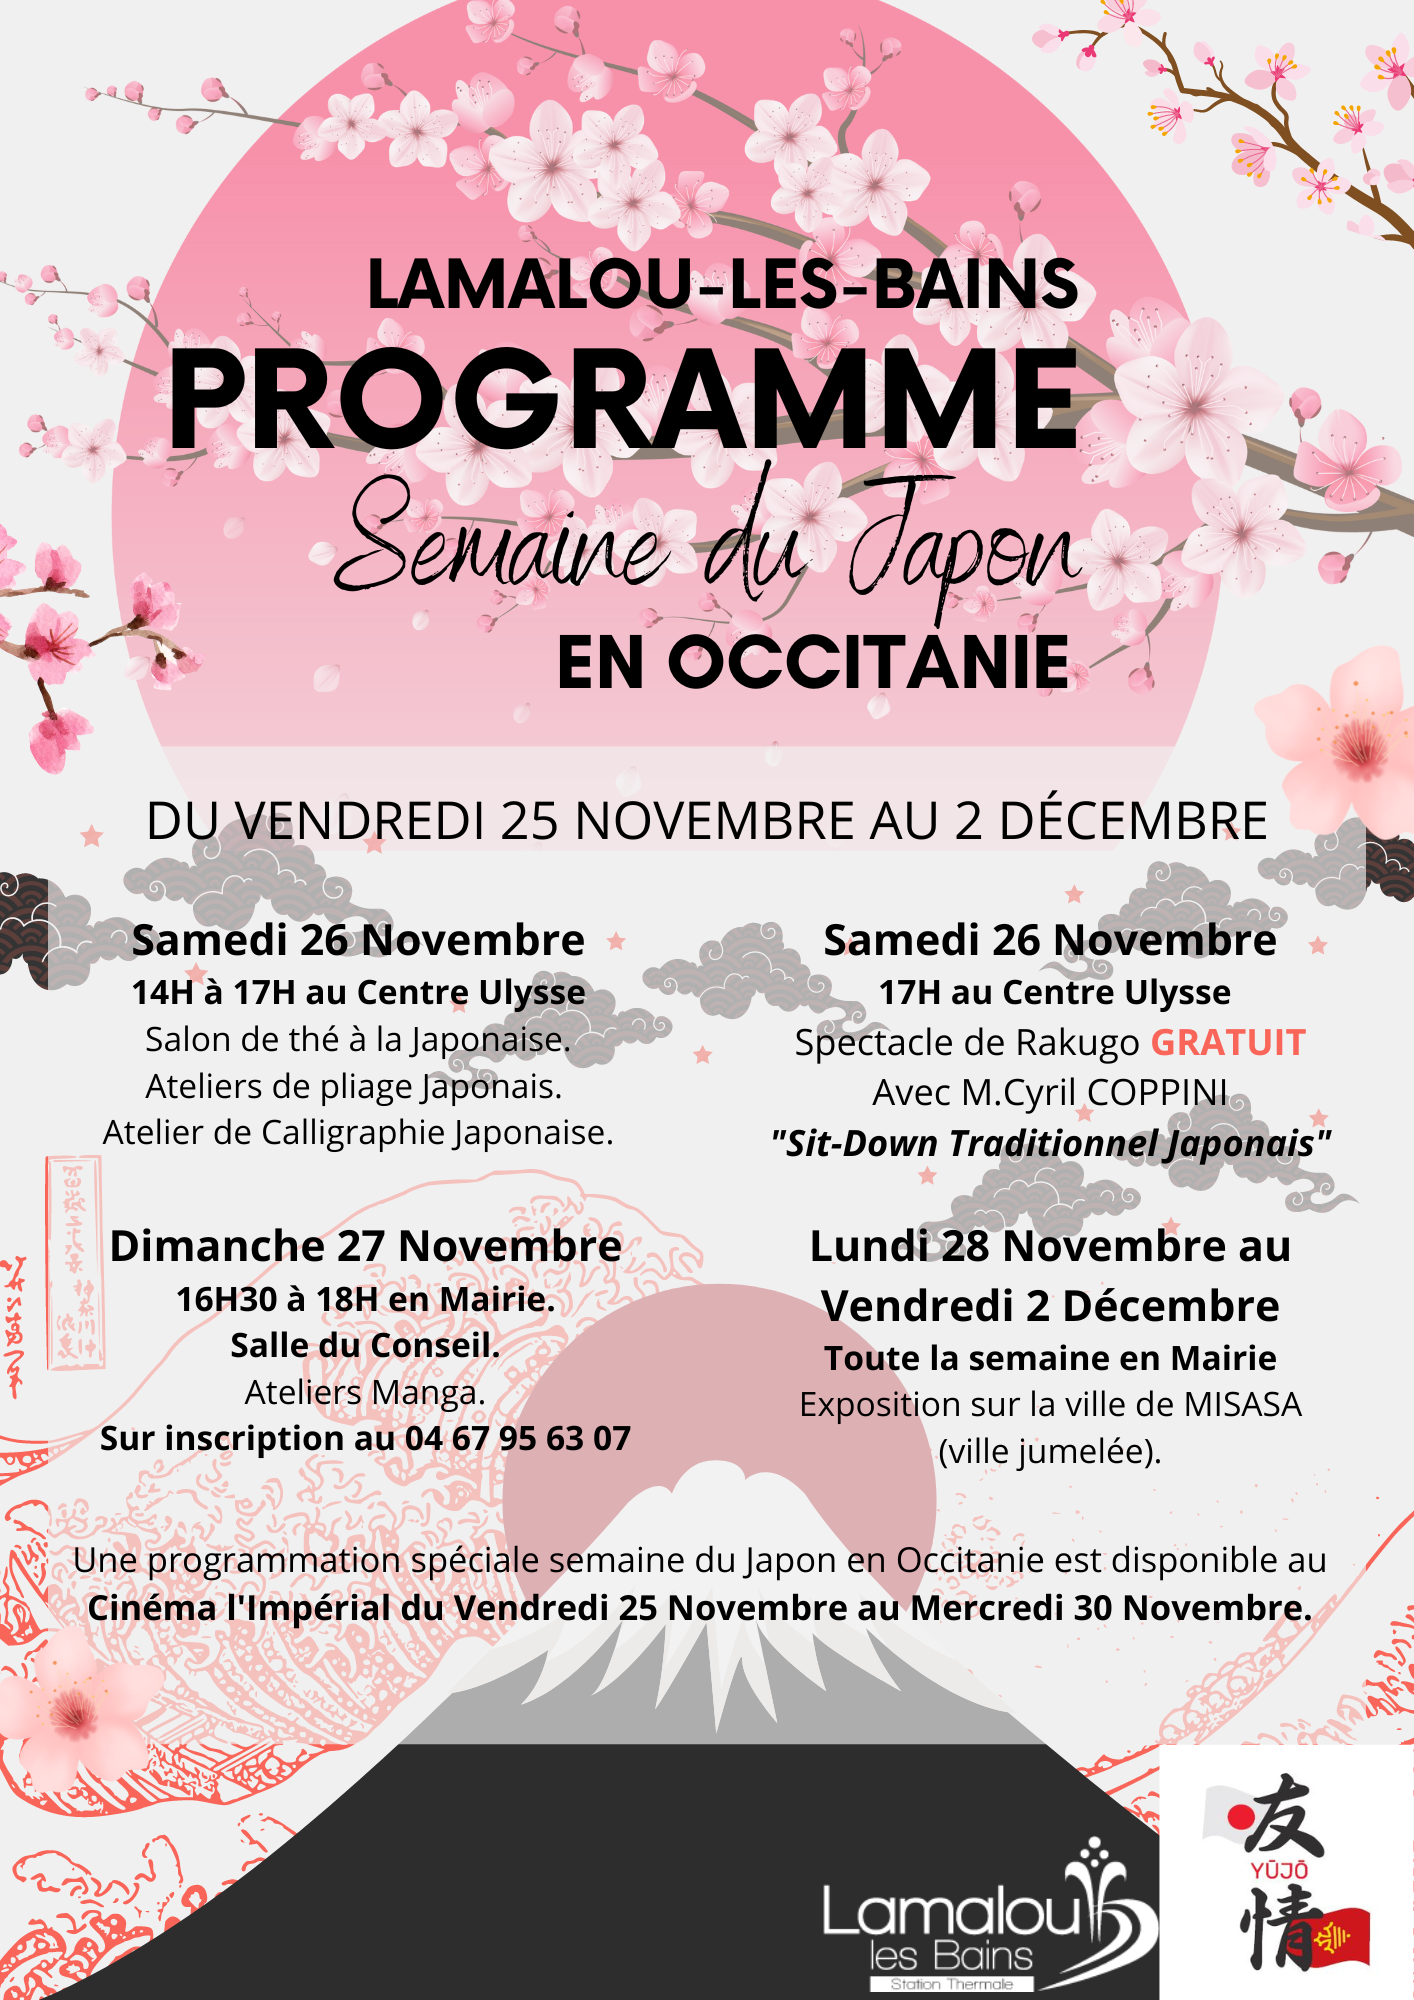 Programme semaine du japon en occitanie Lamalou-les-bains